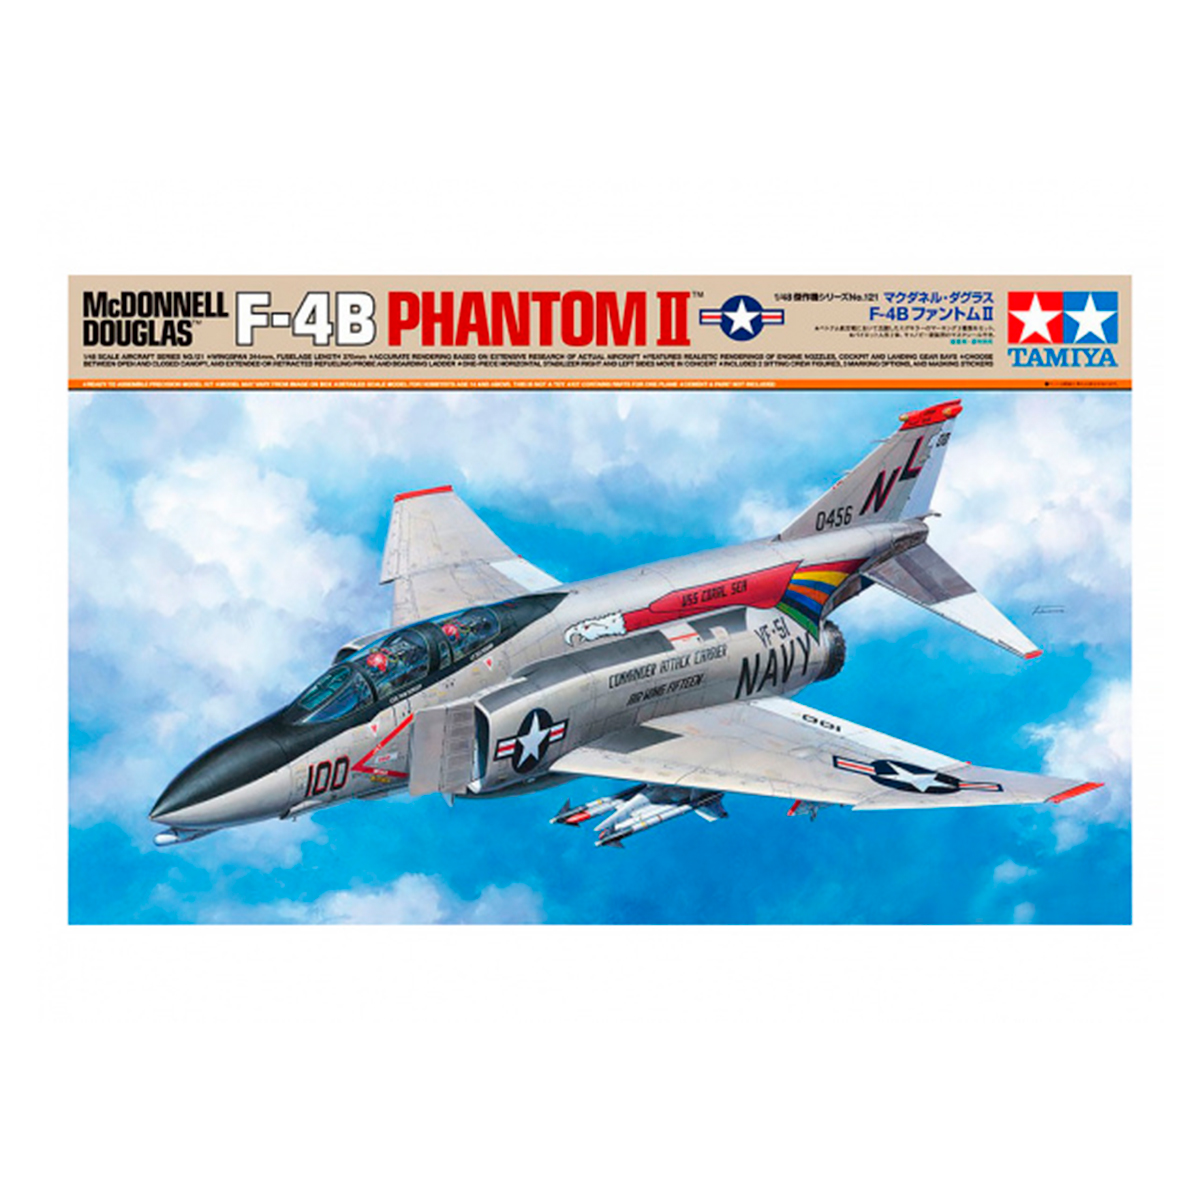 1/48 McDonnell Douglas F-4B Phantom